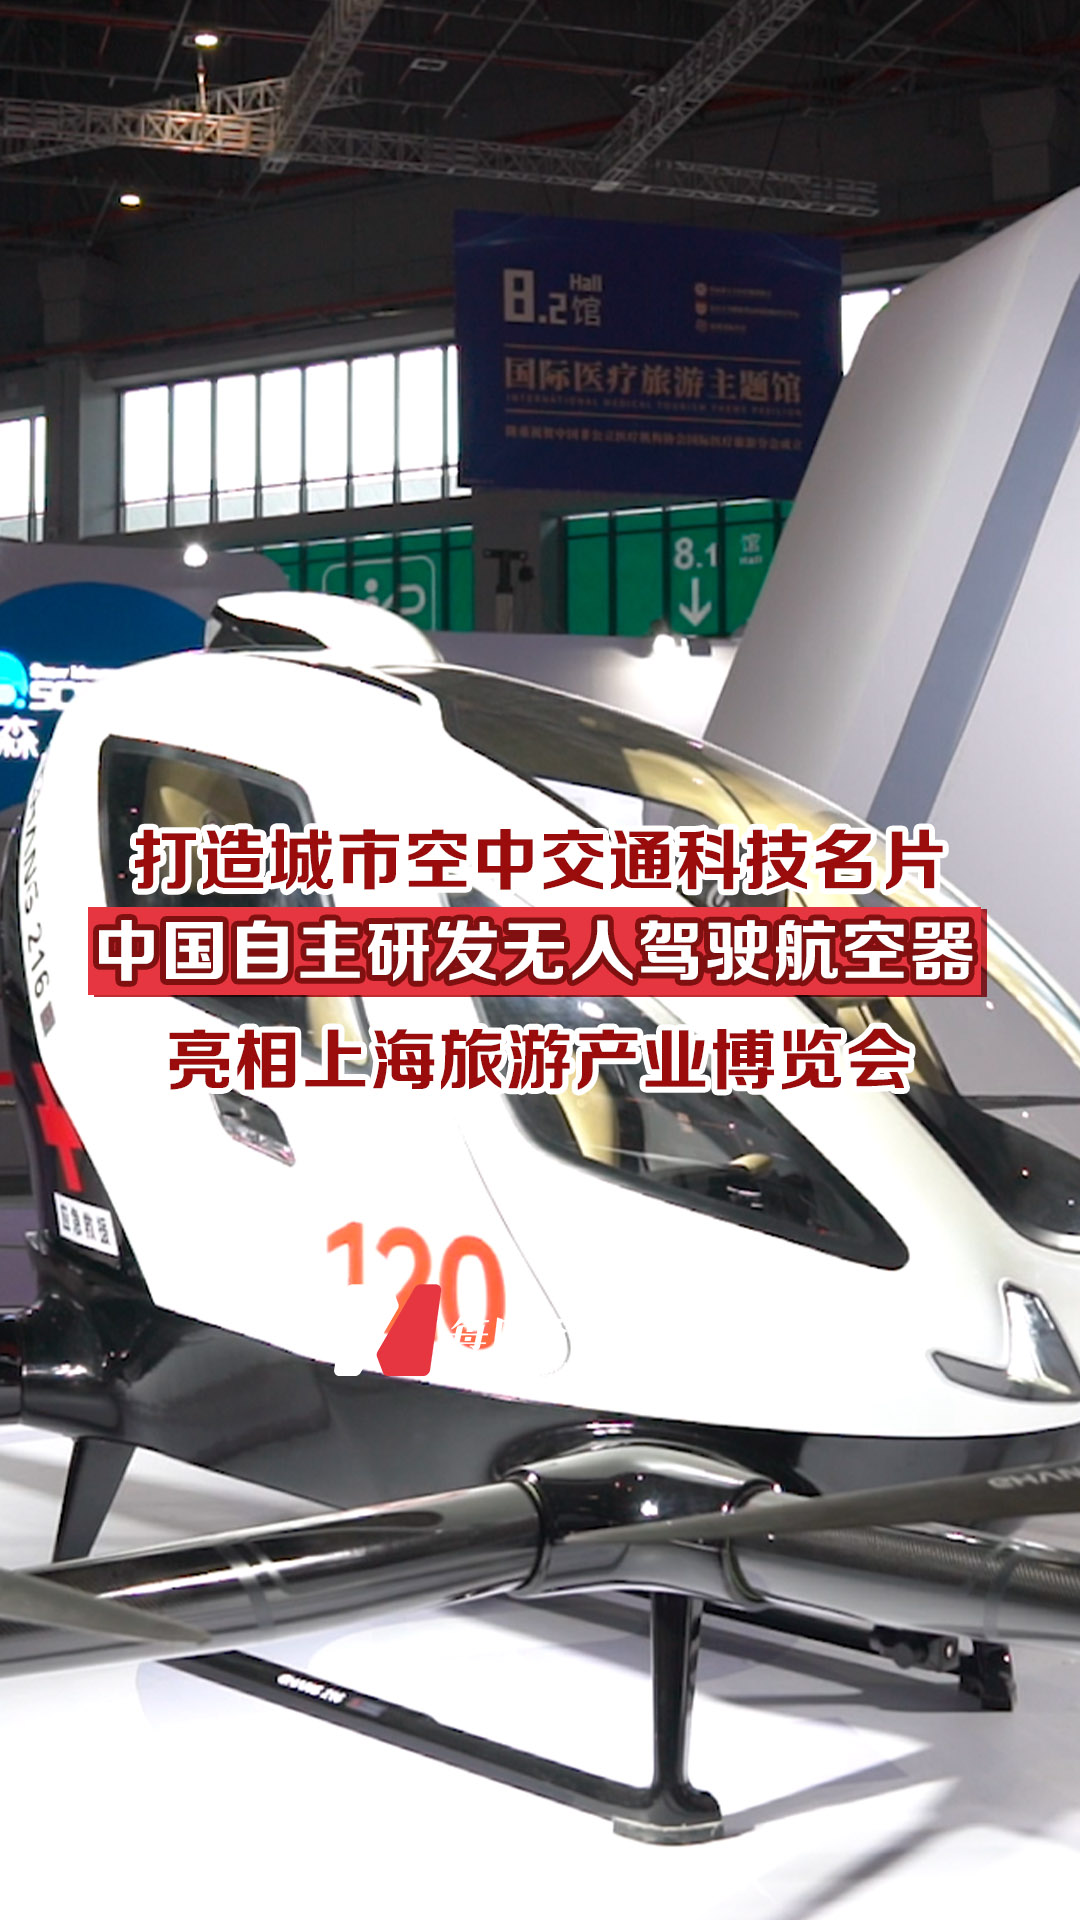 打造城市空中交通科技名片，中國自主研發無人駕駛航空器亮相上海旅游產業博覽會